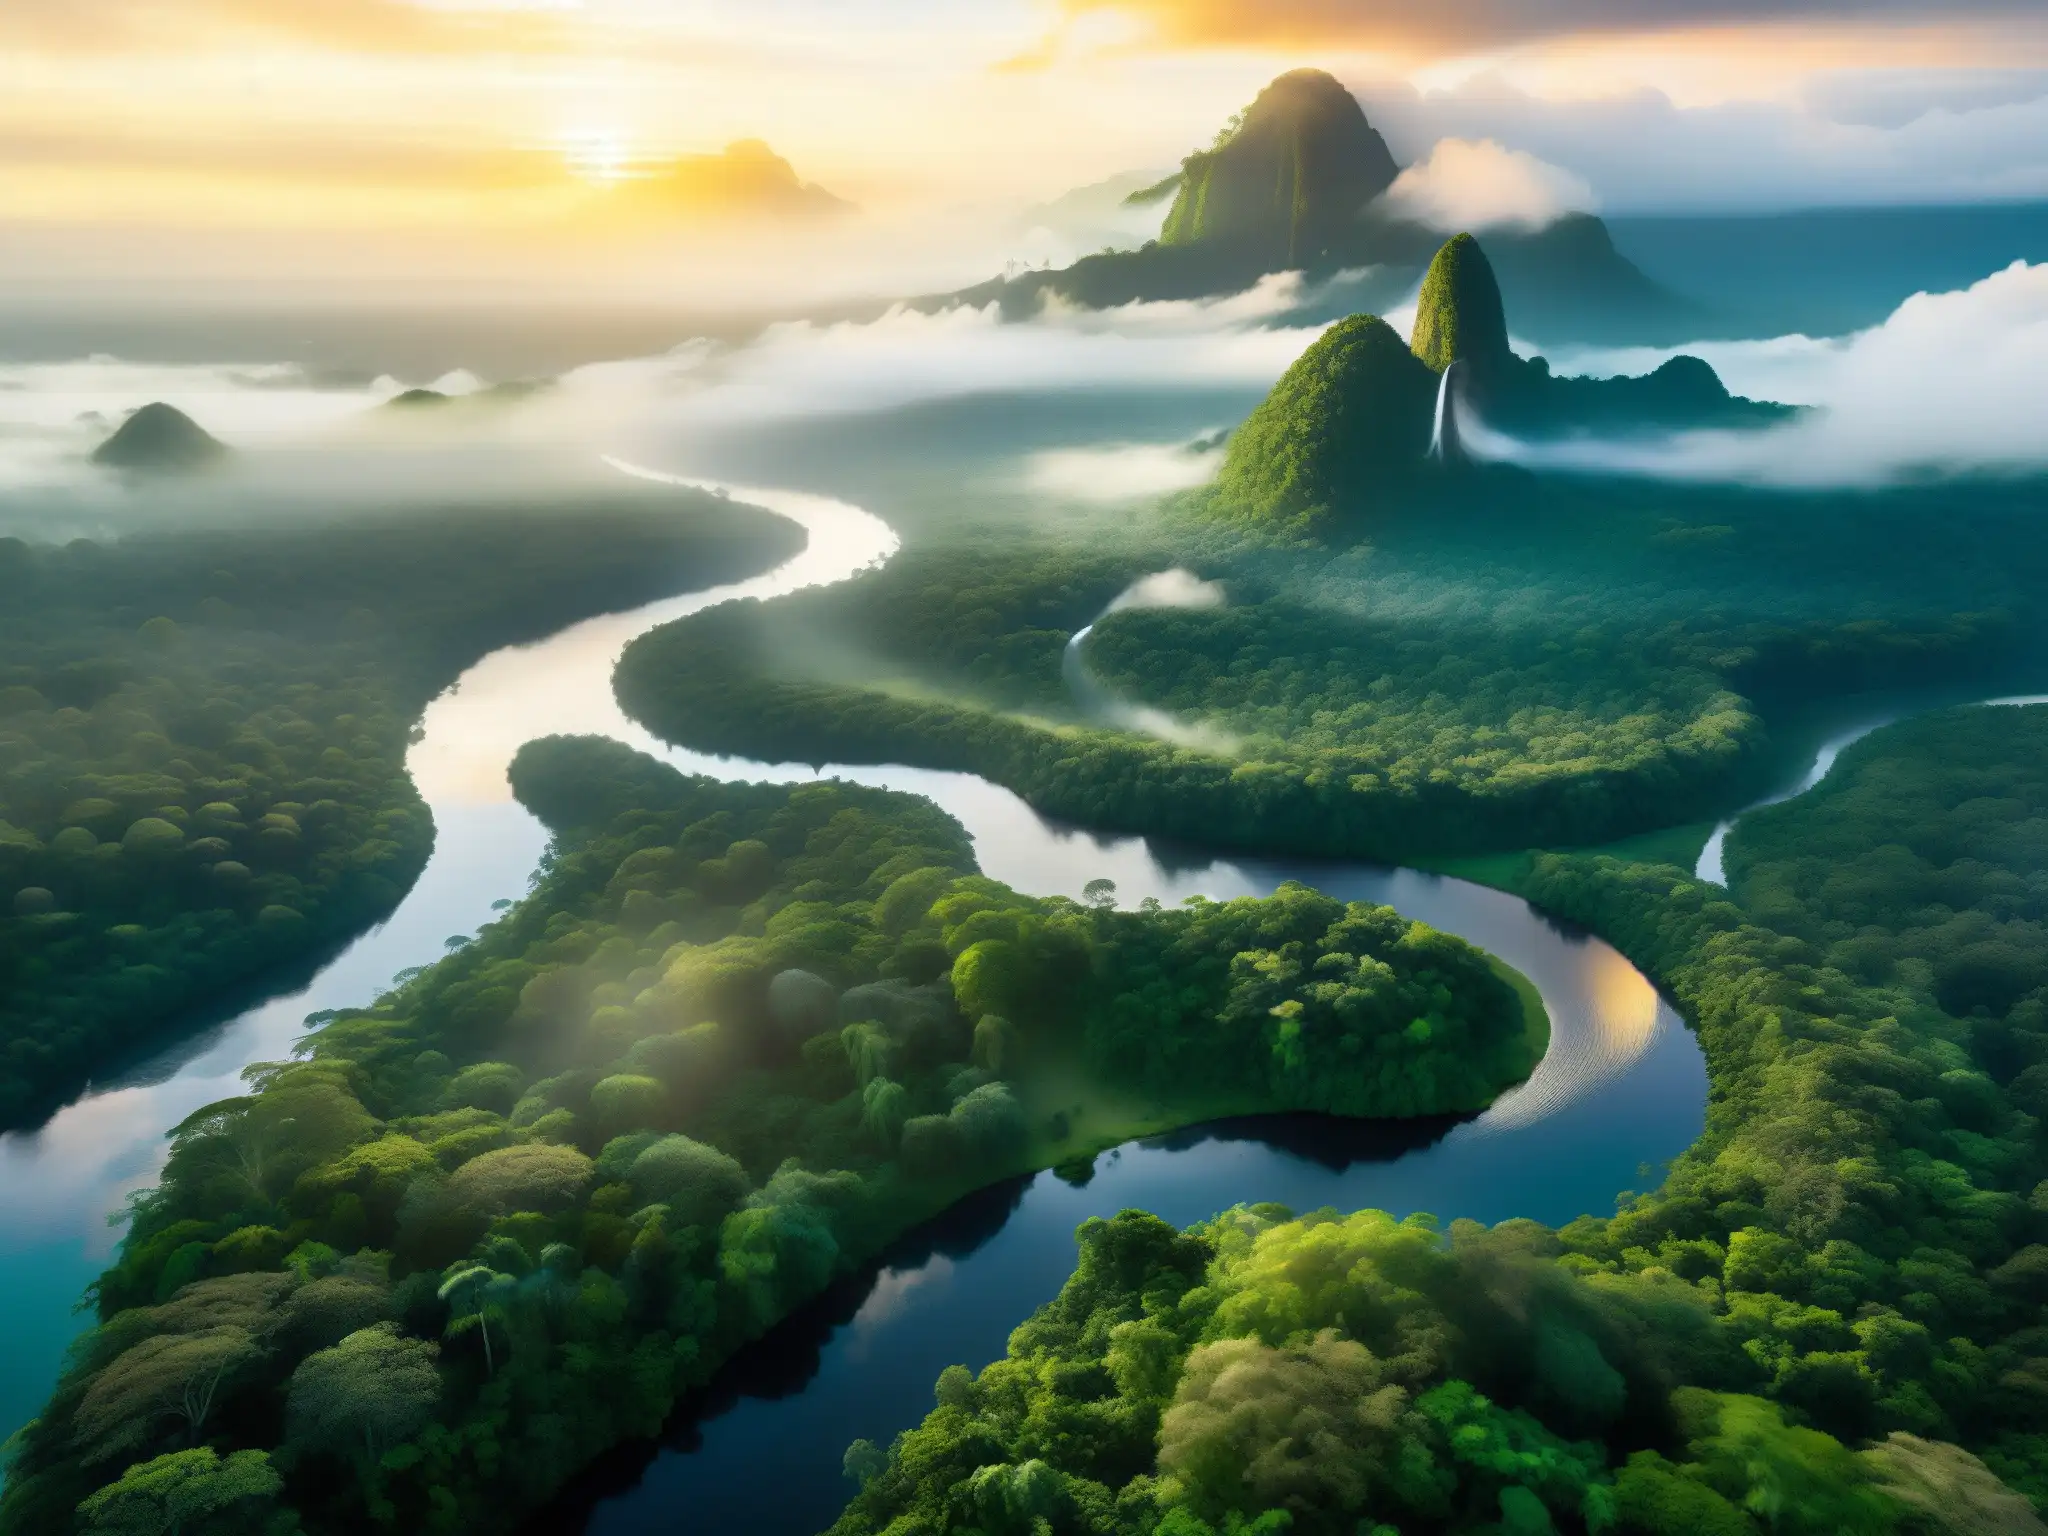 Imagen aérea de la exuberante selva amazónica con ríos serpenteantes y aves coloridas, evocando la mítica ciudad perdida El Dorado